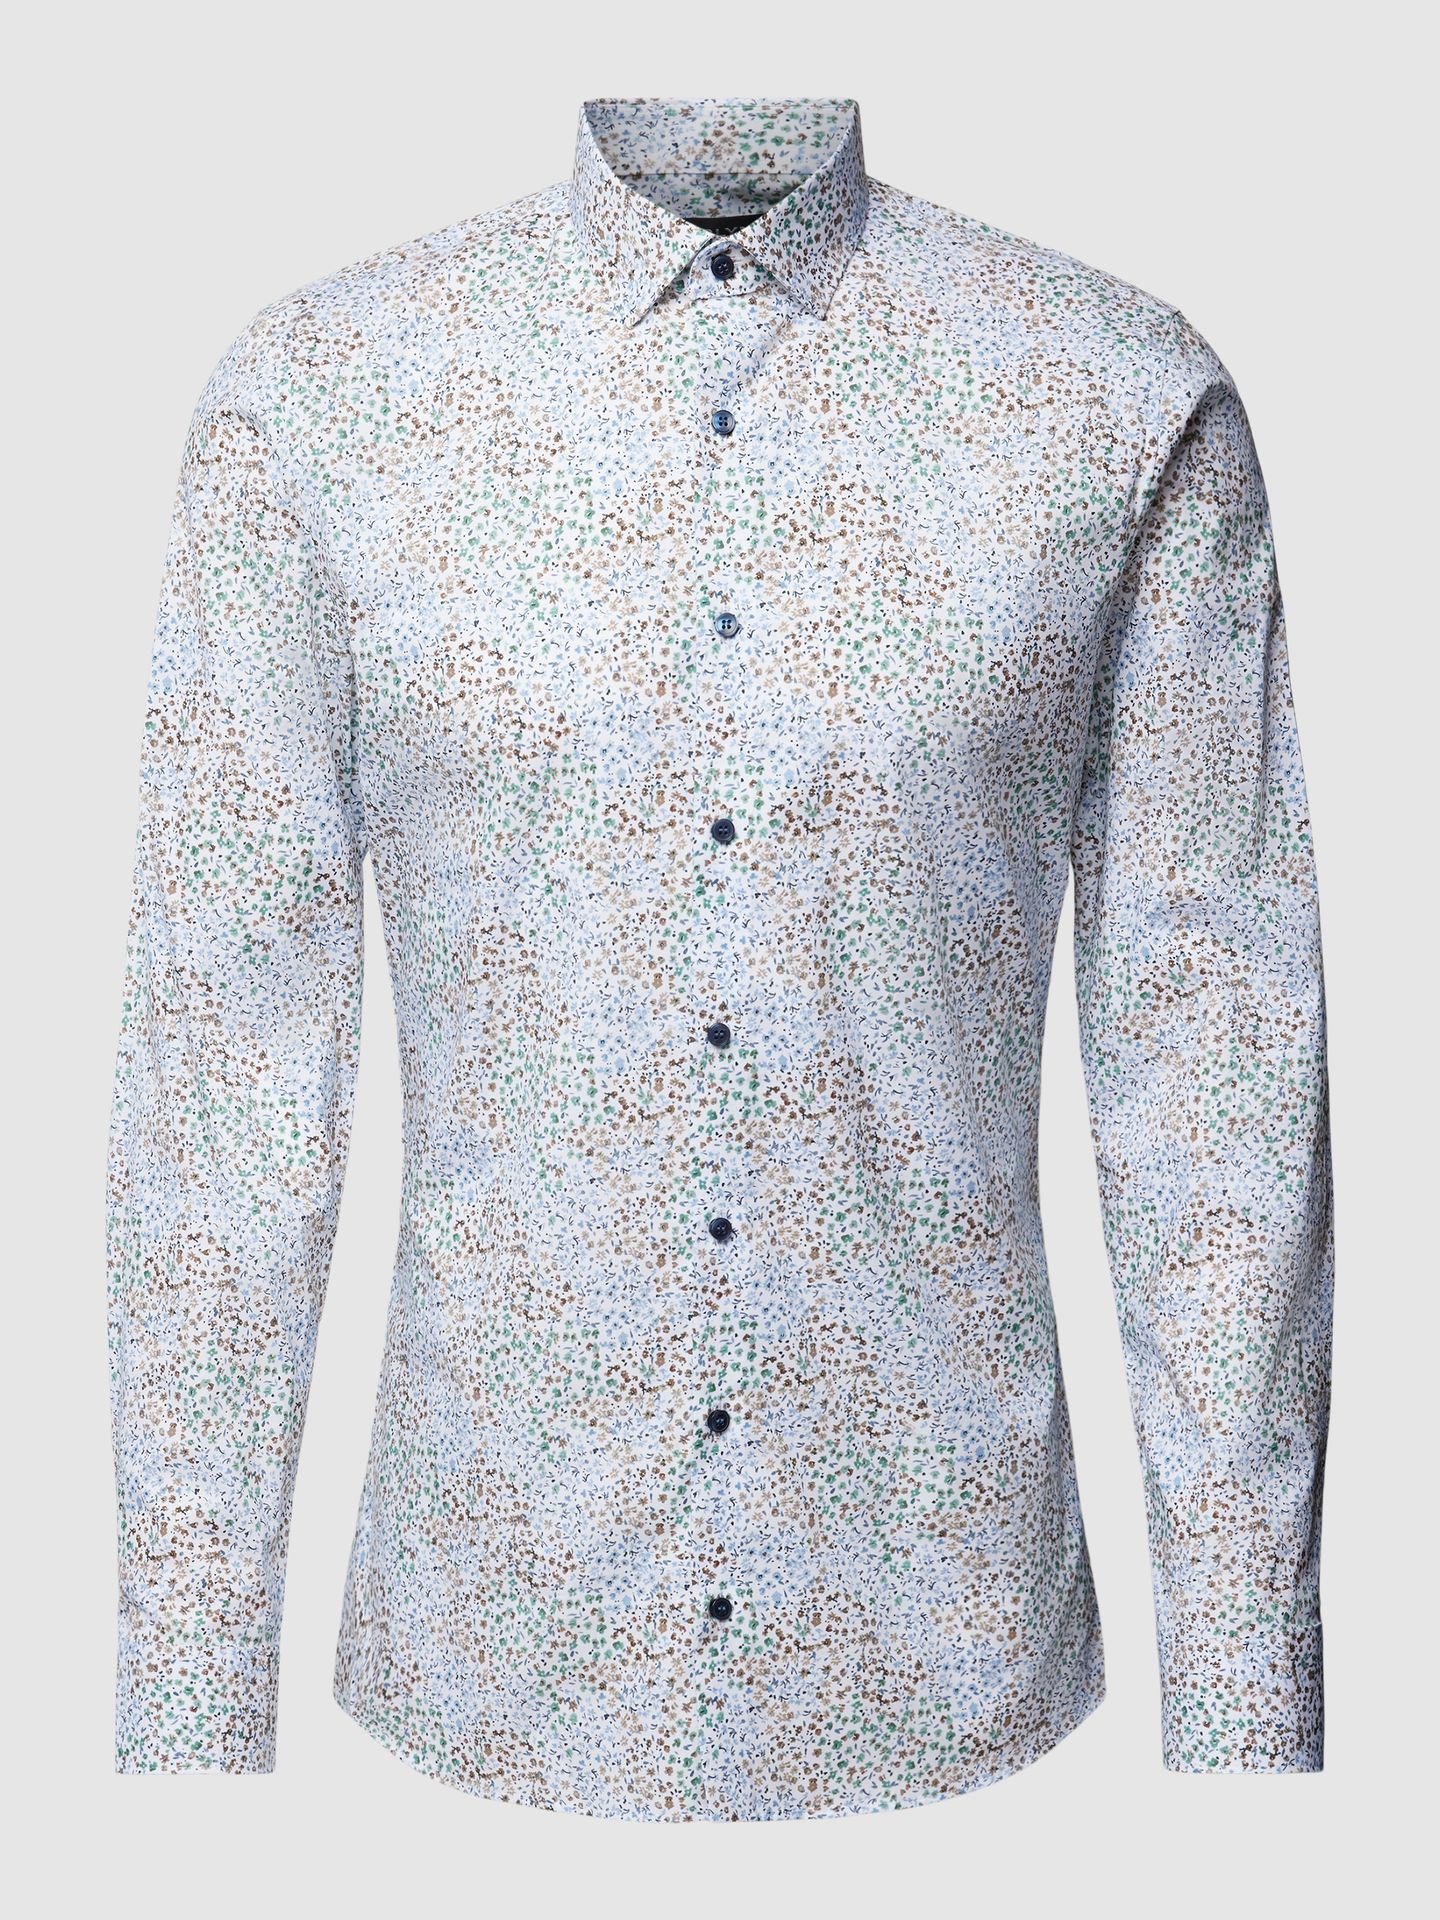 Koszula biznesowa o kroju super slim fit ze wzorem na całej powierzchni